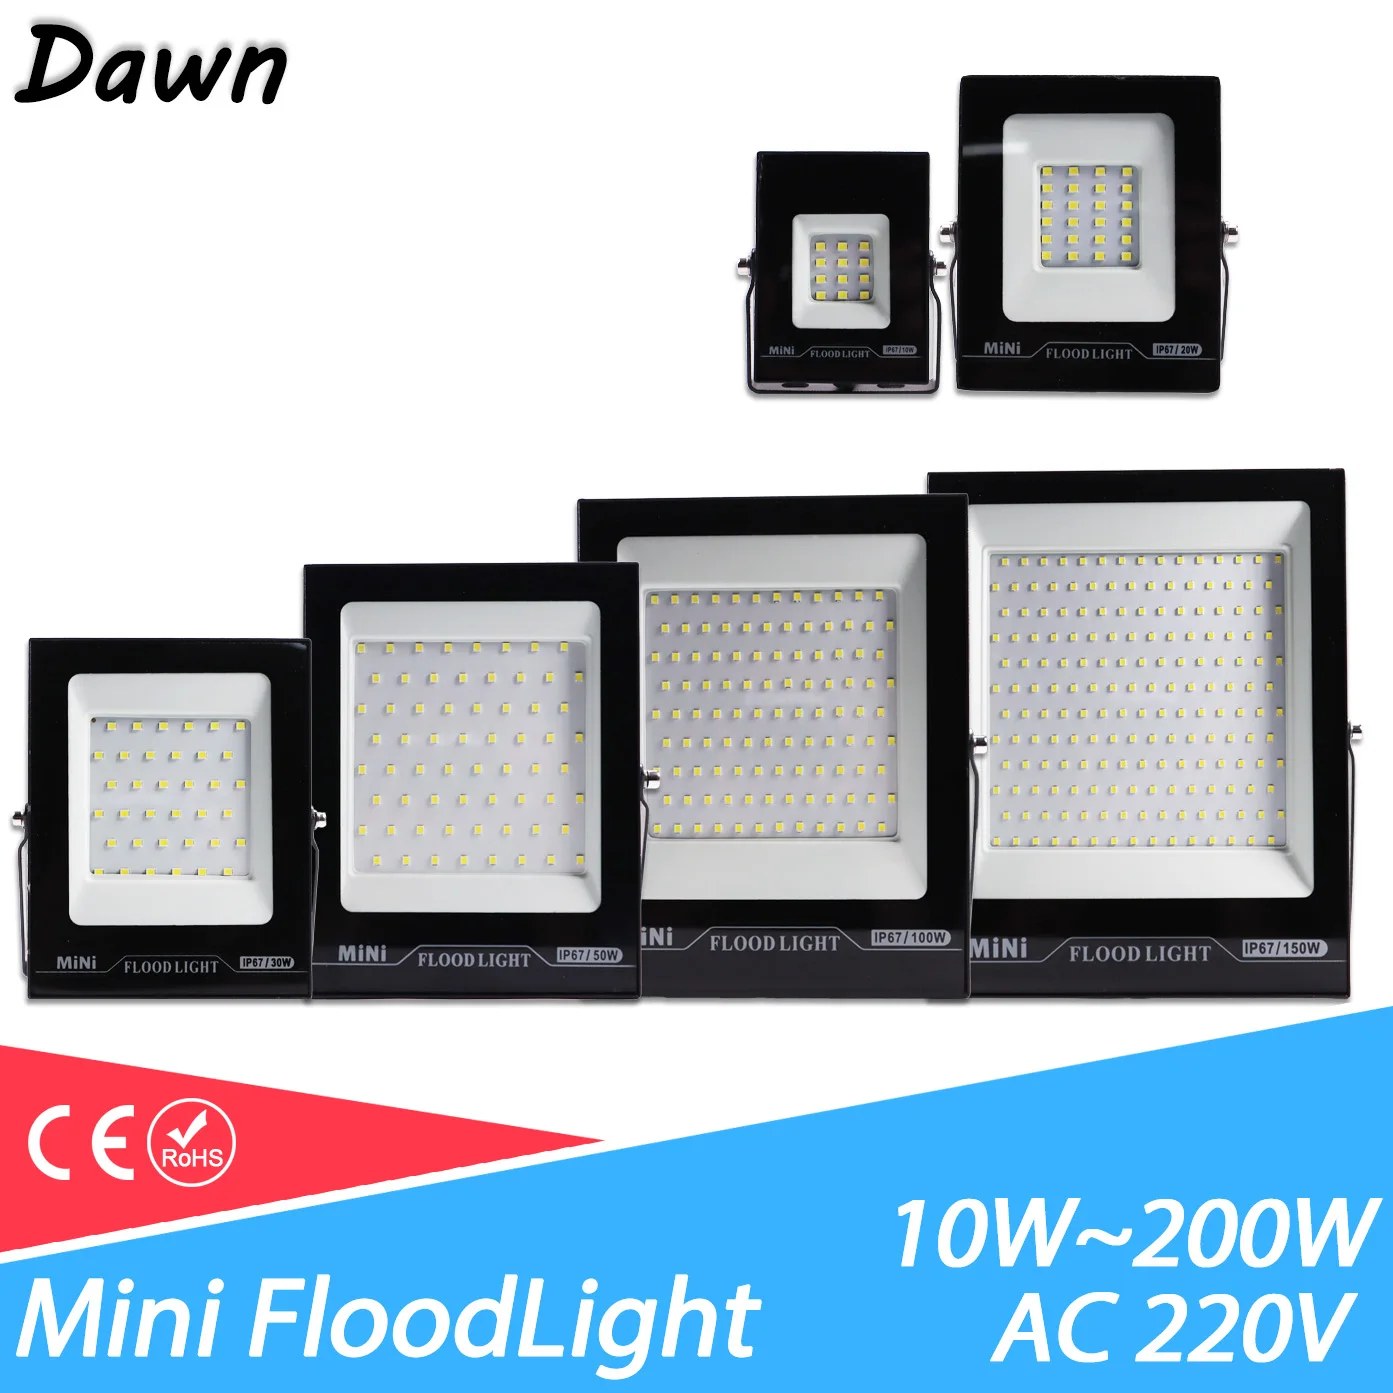 LED FloodLight AC 220V 10W 30W 50W 100W 150W 200W Outdoor Garden Projector Lighting Spotlight Wall Flood Lights IP67 Waterproof